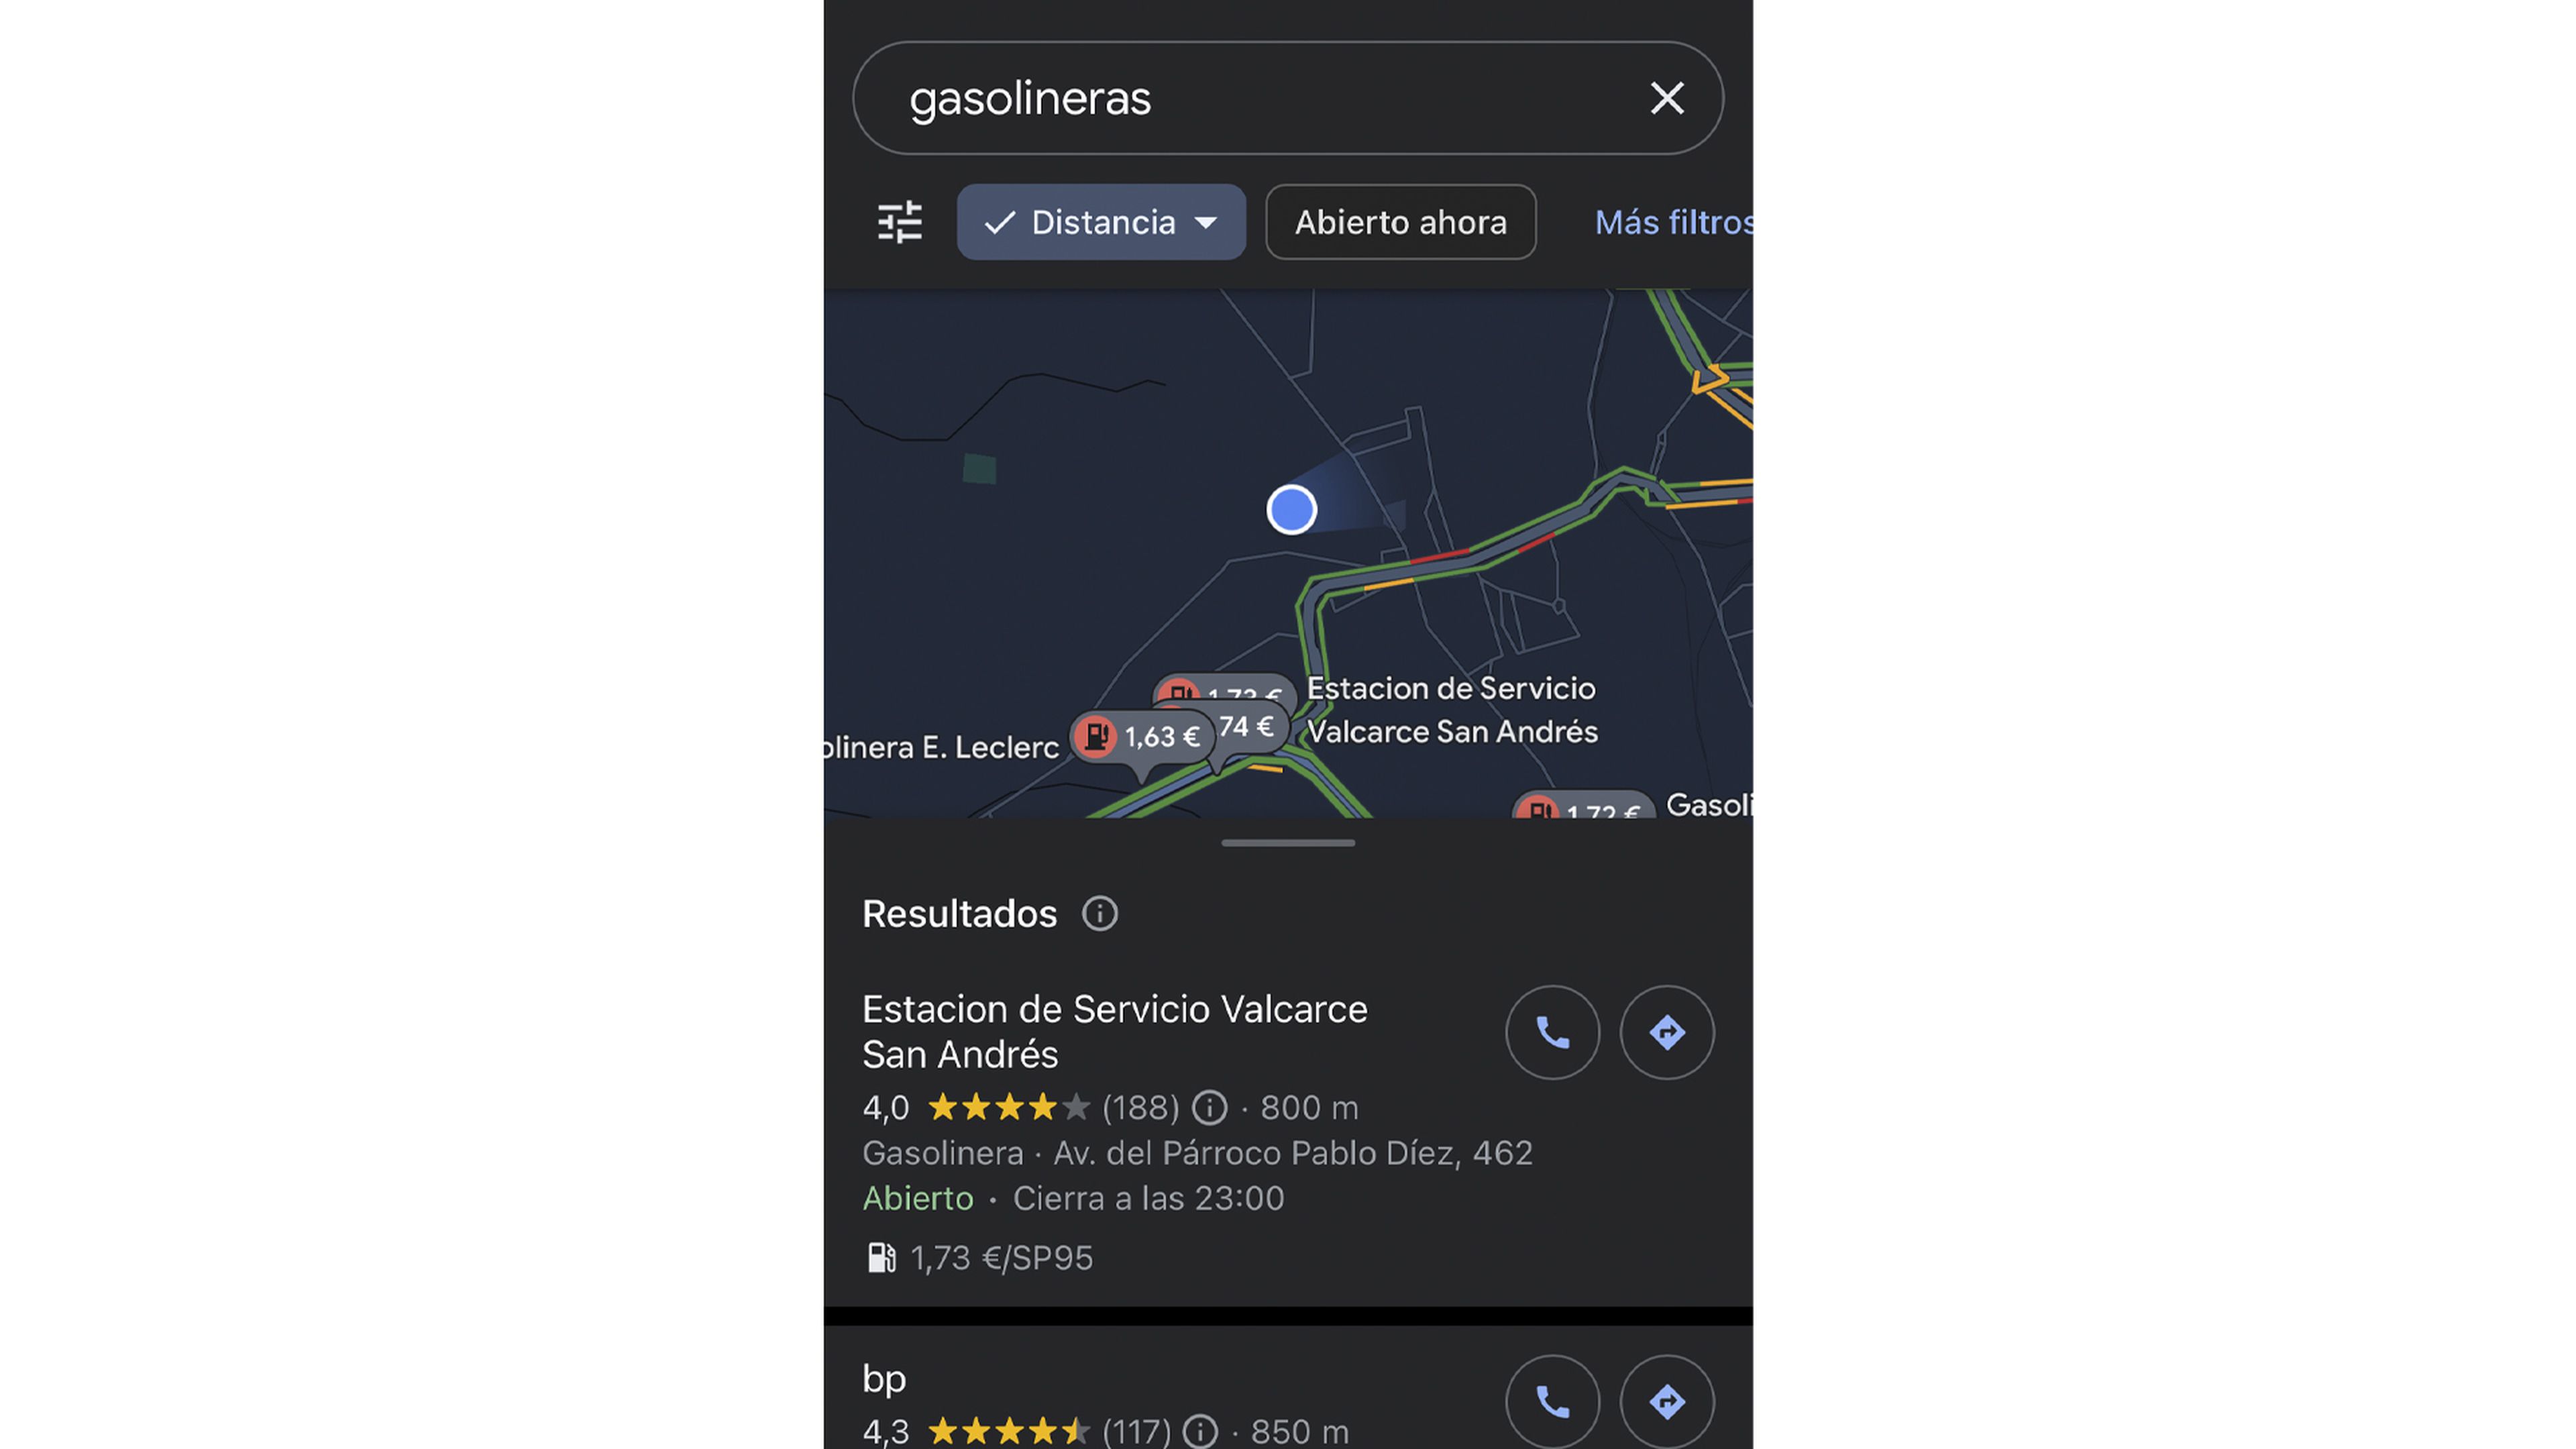 La gasolinera más próxima gracias a Google Maps